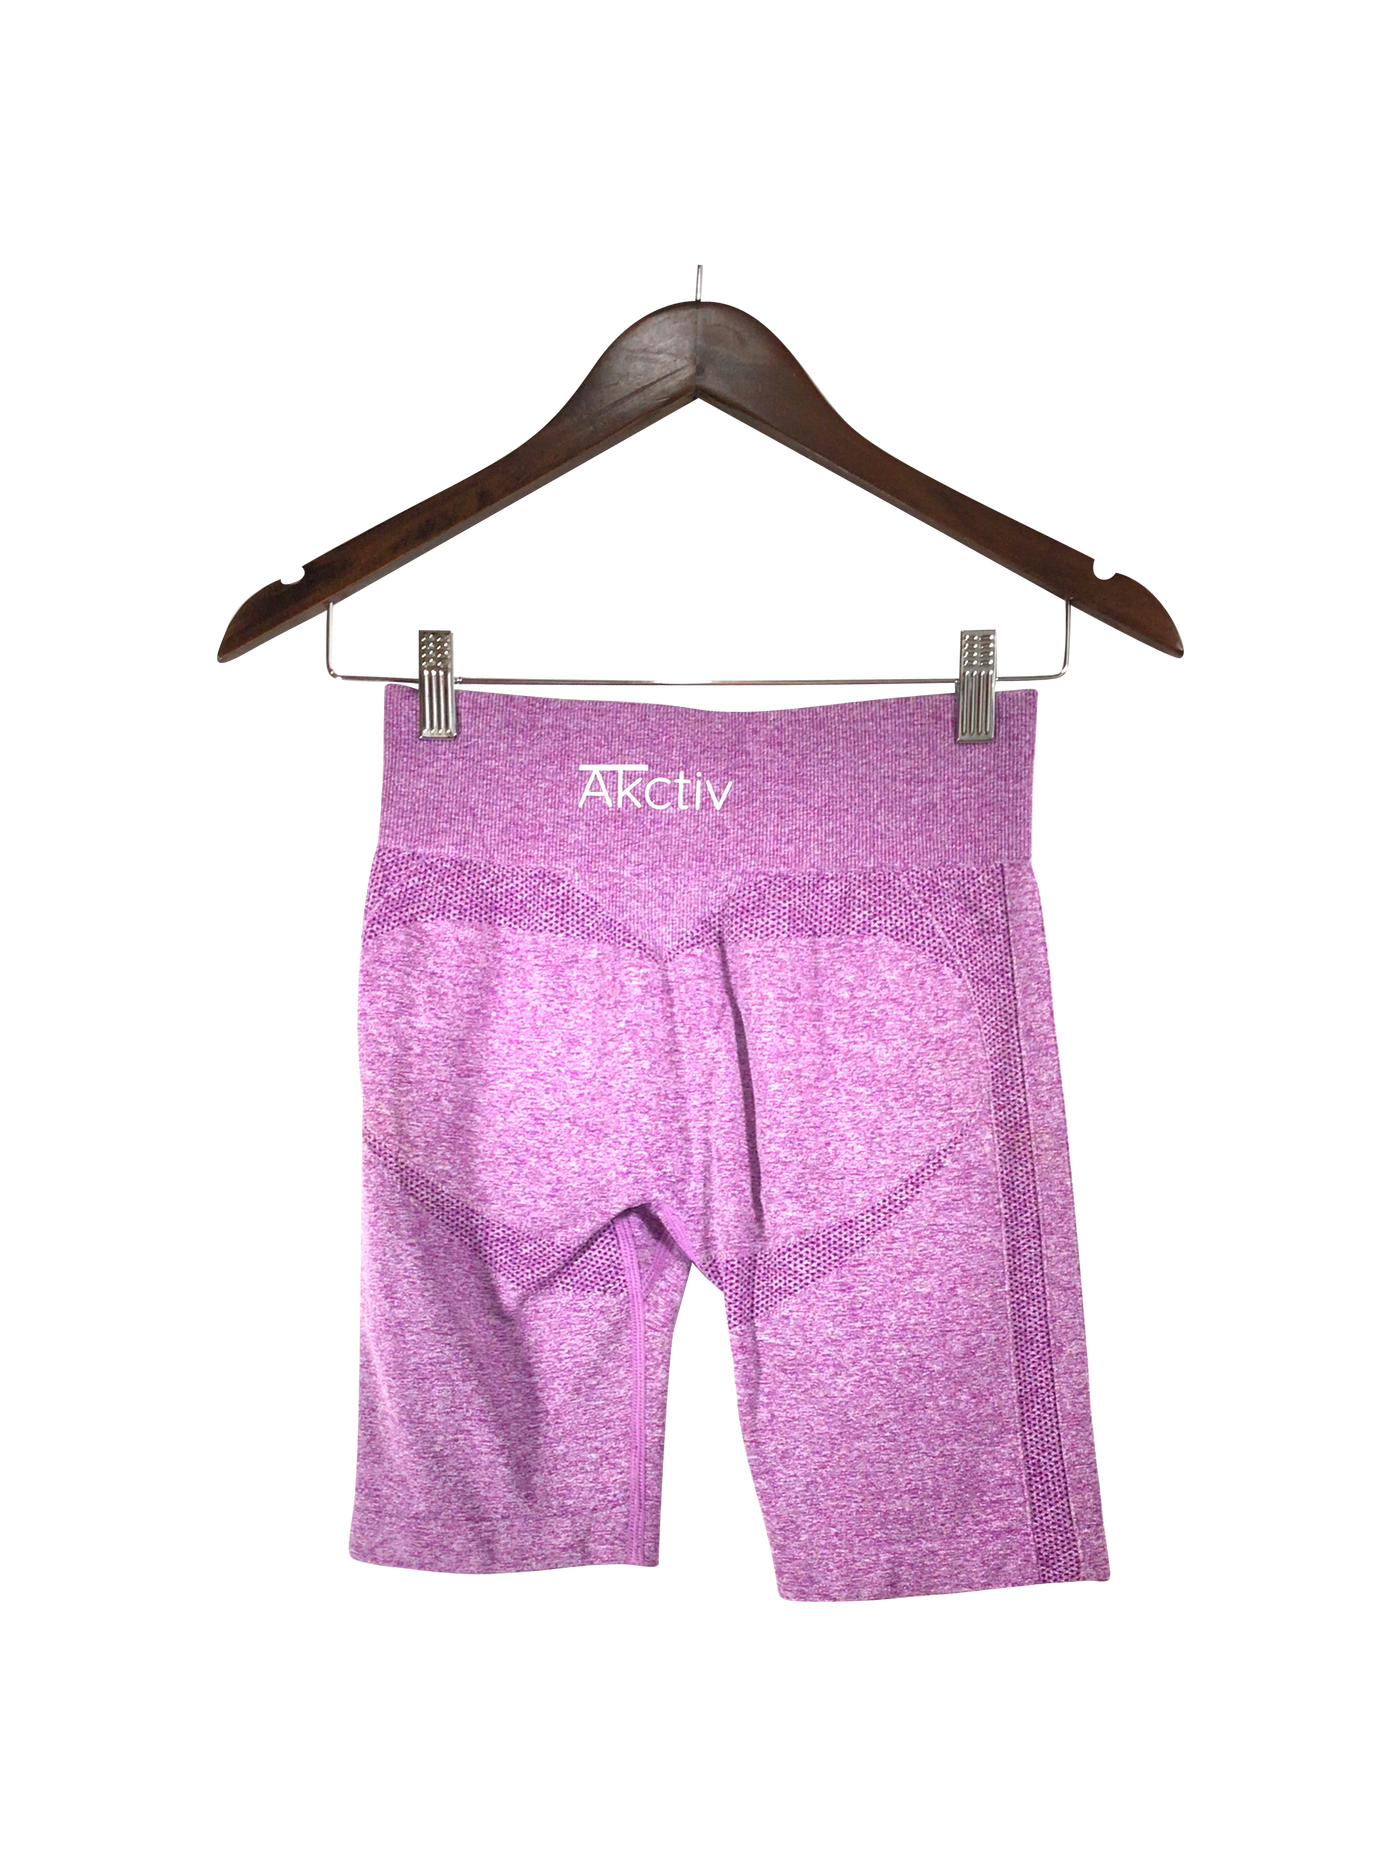 AKCTIV Women Activewear Leggings Regular fit in Purple - Size XS | 15 $ KOOP